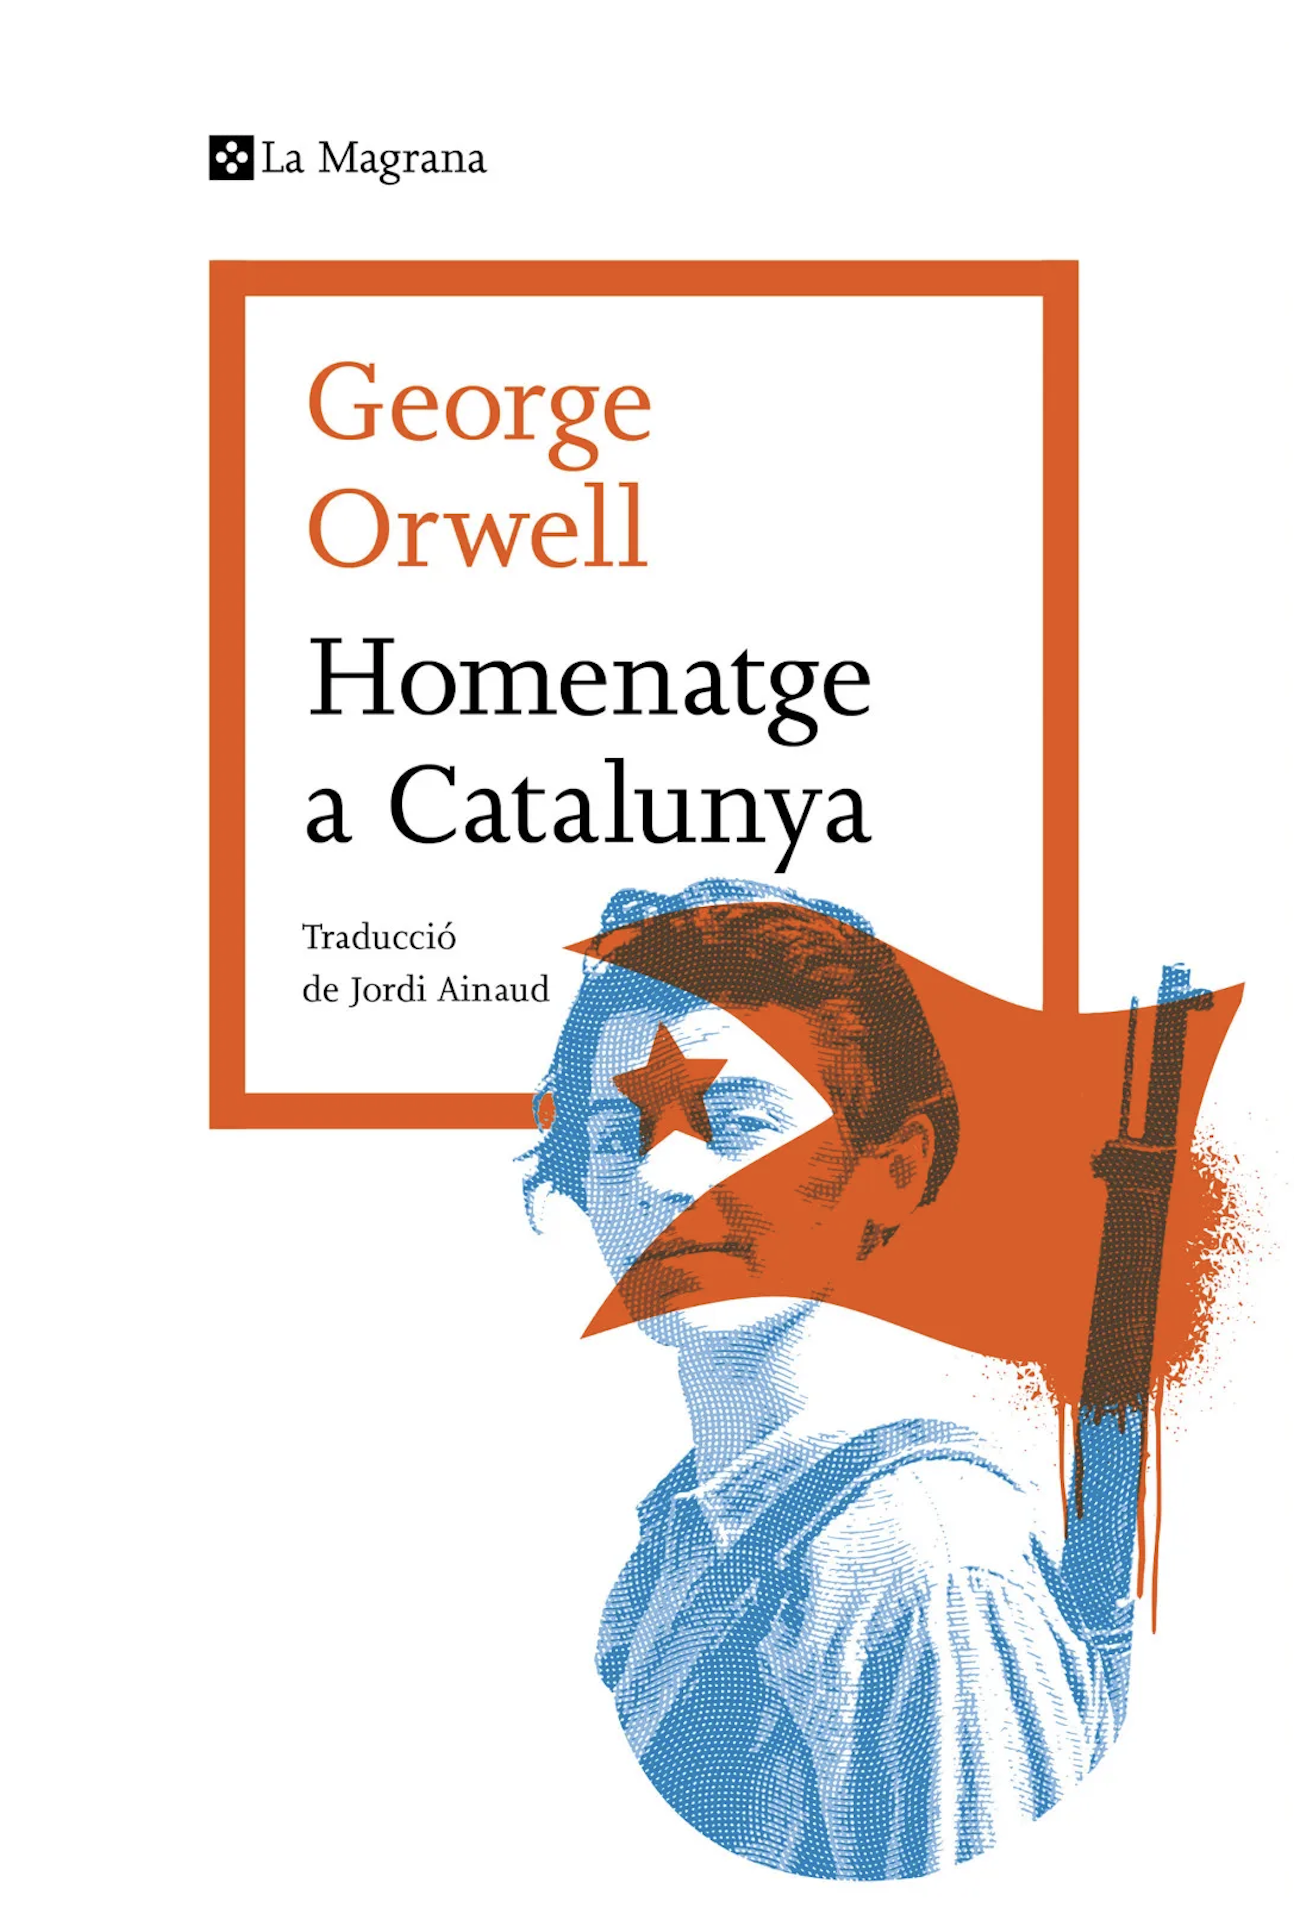 Portada del llibre 'Homenatge a Catalunya', de George Orwell, publicat per La Magrana